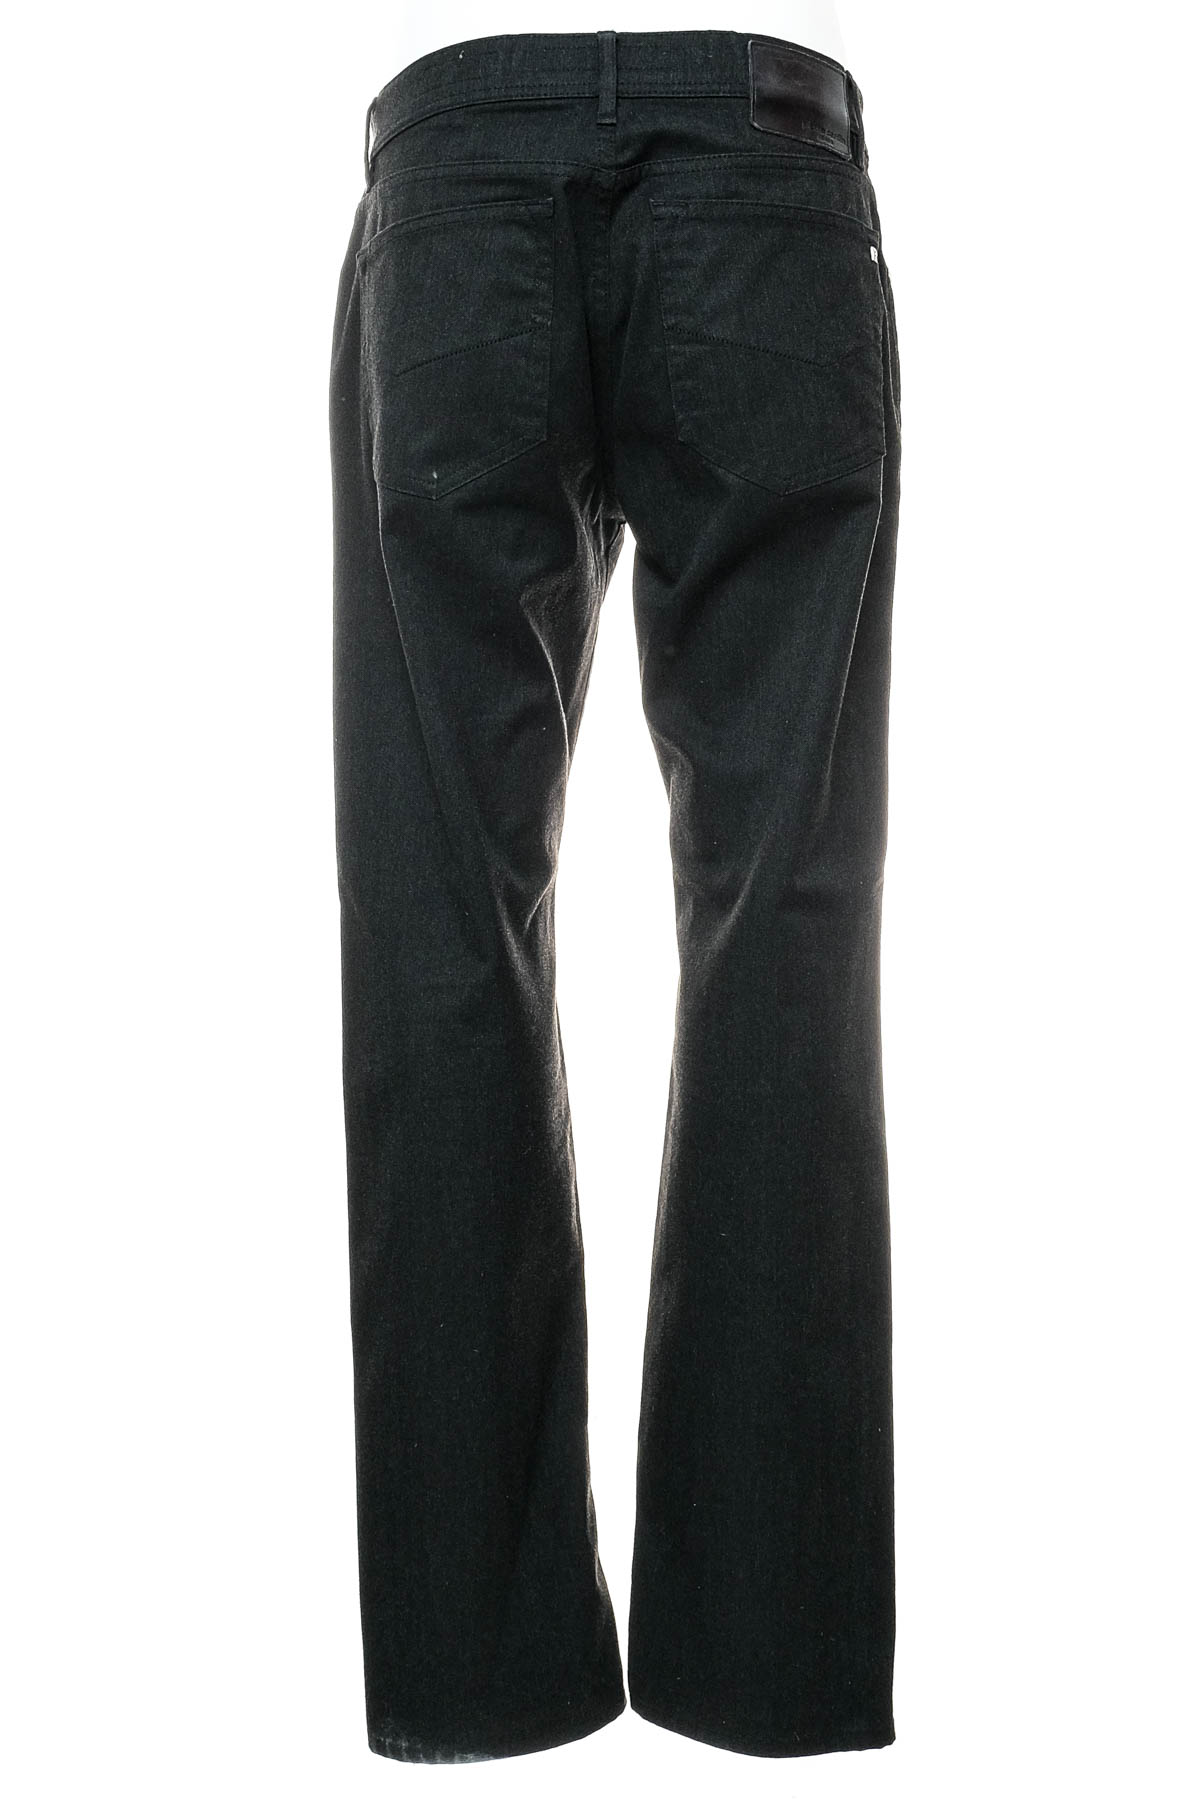 Men's trousers - Pierre Cardin - 1